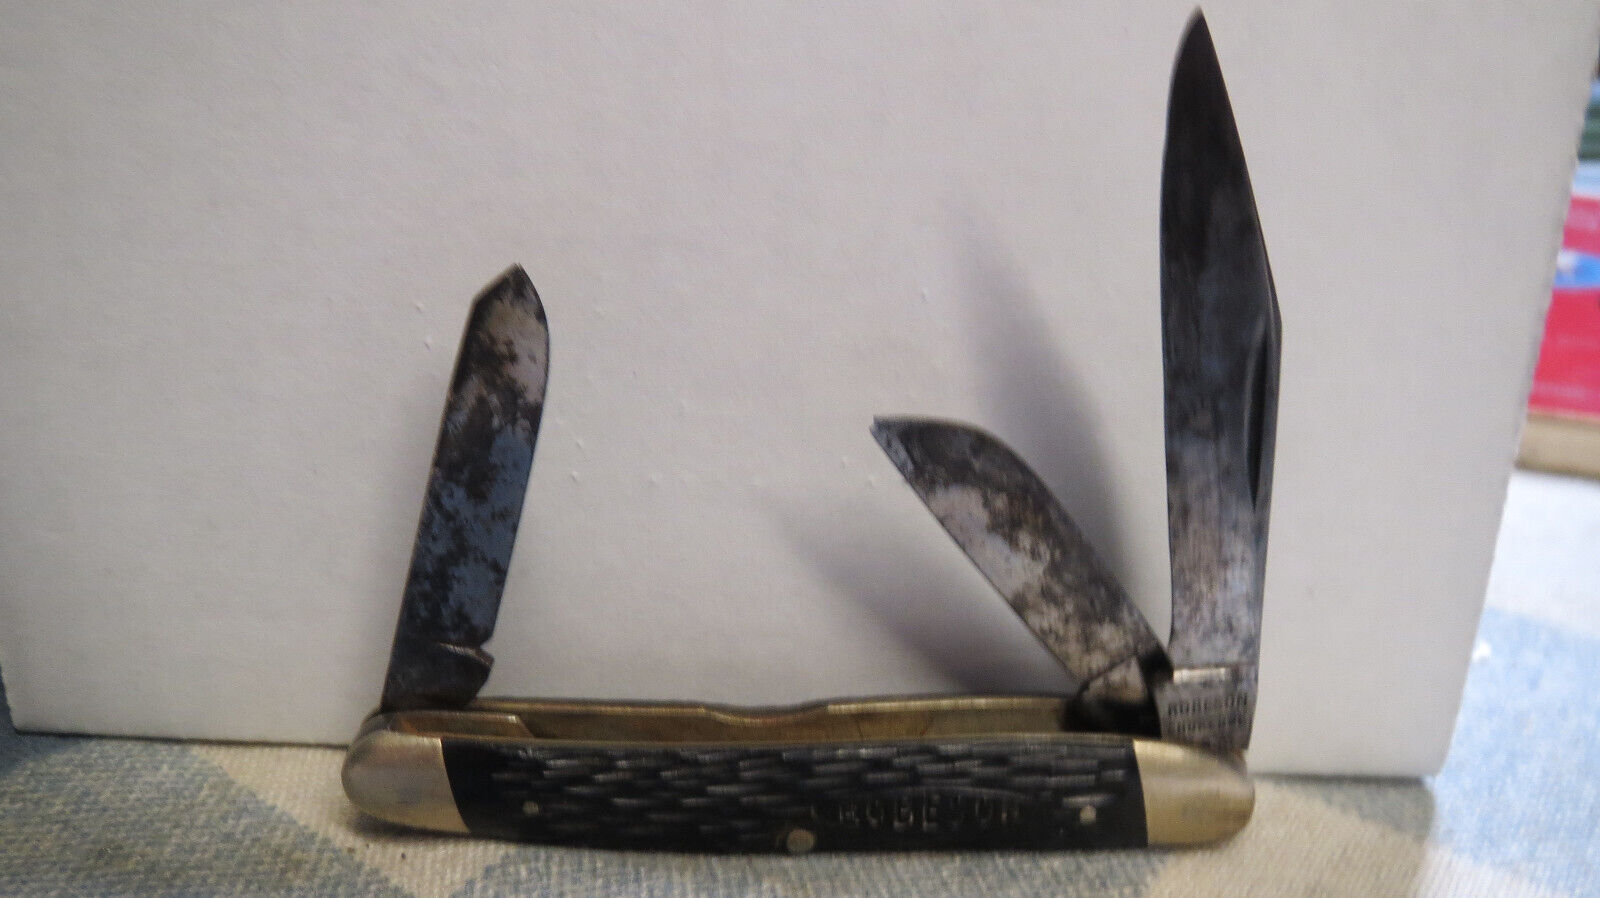 Vintage Robeson Shuredge 2 blade #633728 Pocket Knife 3 5/16 Inch